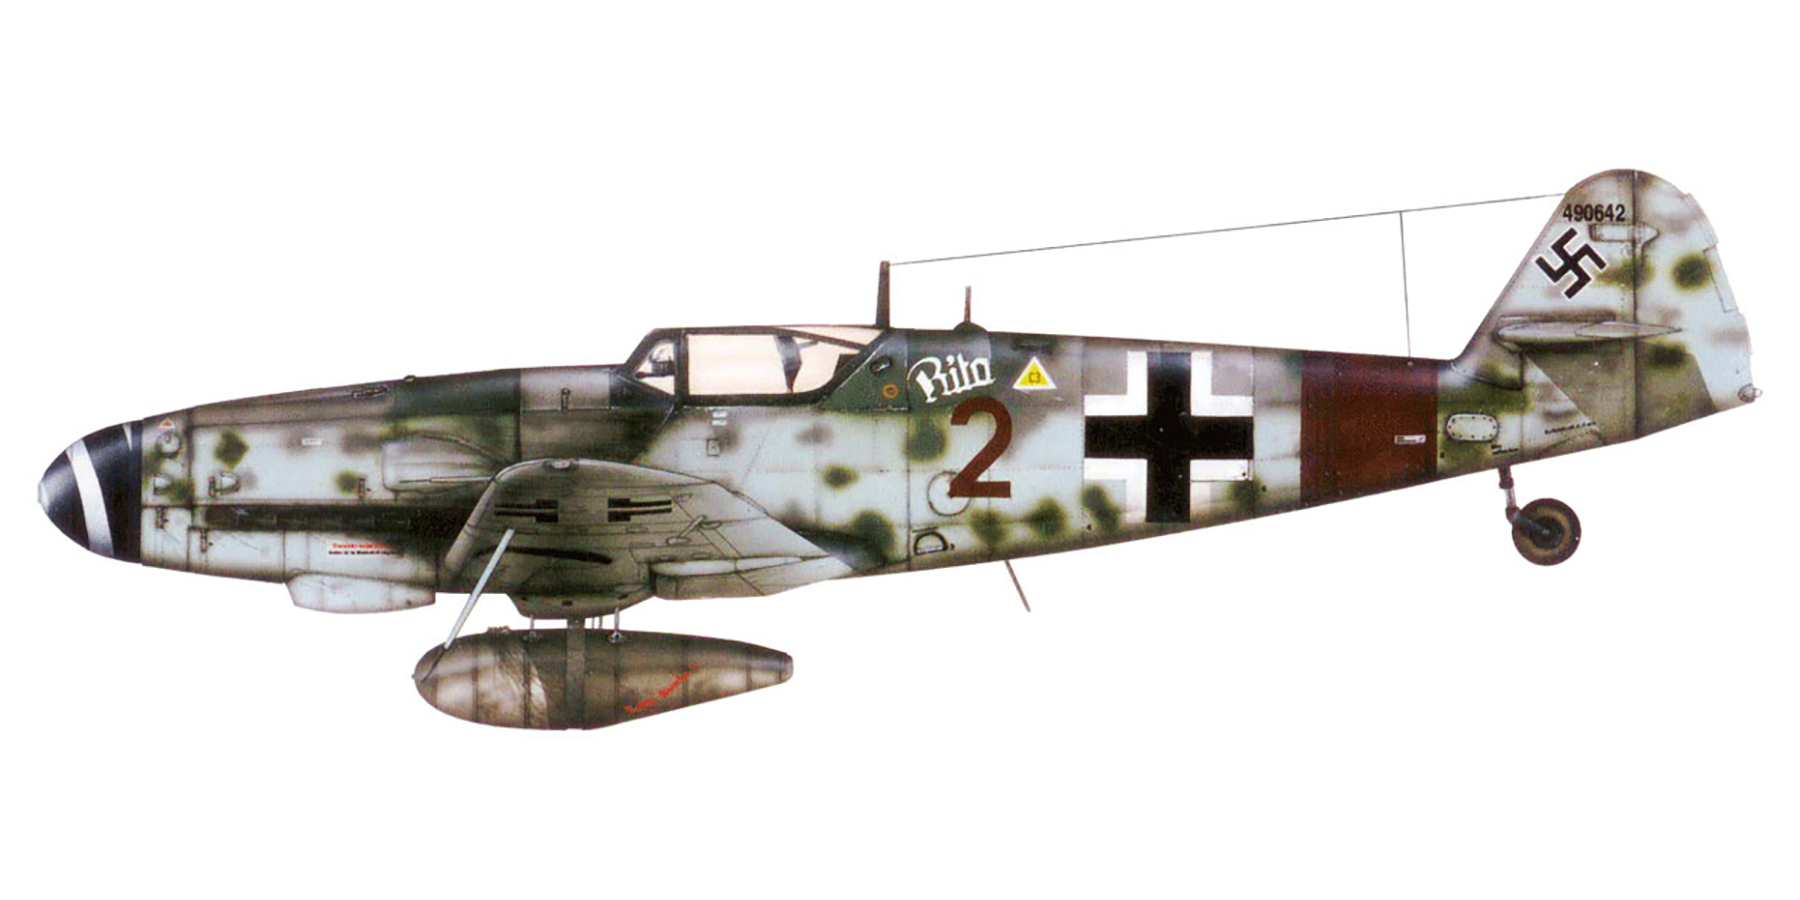 Messerschmitt Bf 109G6R3 2.JG300 Red 2 Rita WNr 490642 Eberhard Gzik Brandenburg Dec 1944 0A